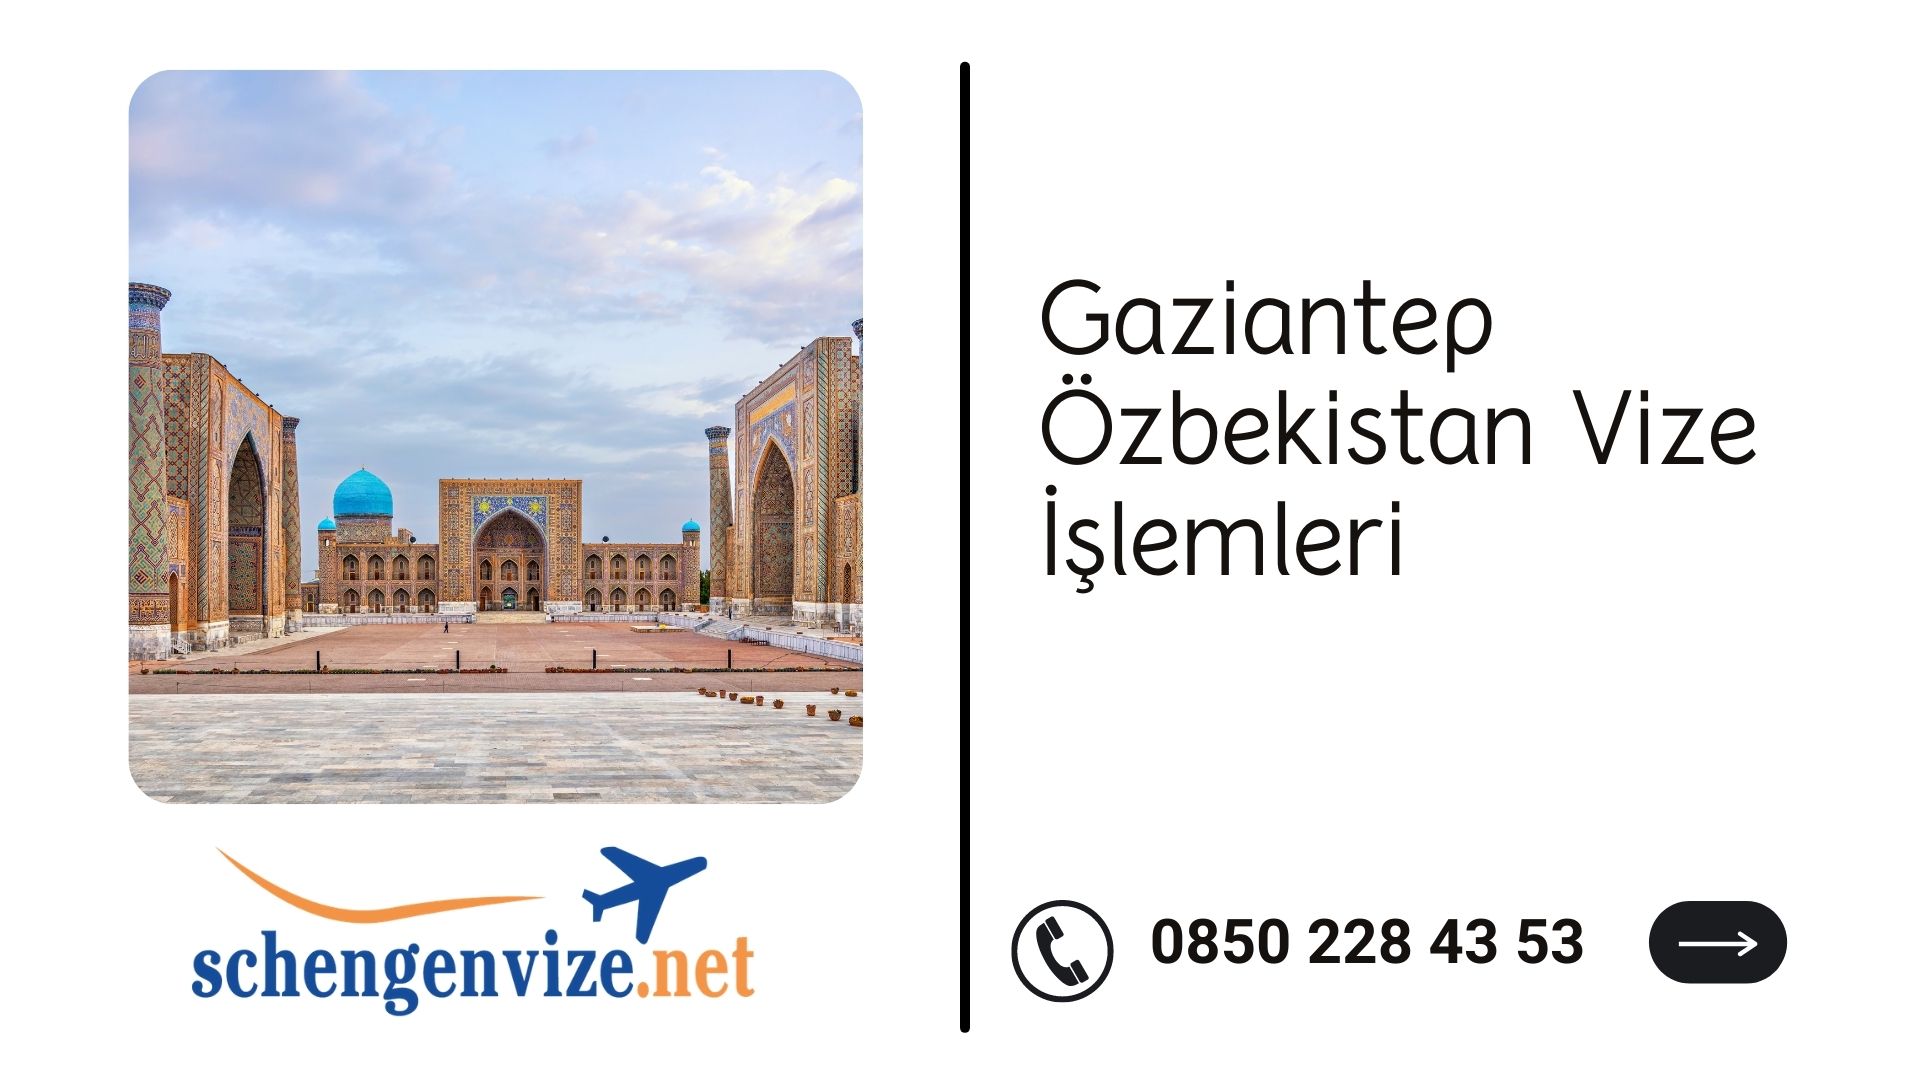 Gaziantep Özbekistan Vize İşlemleri